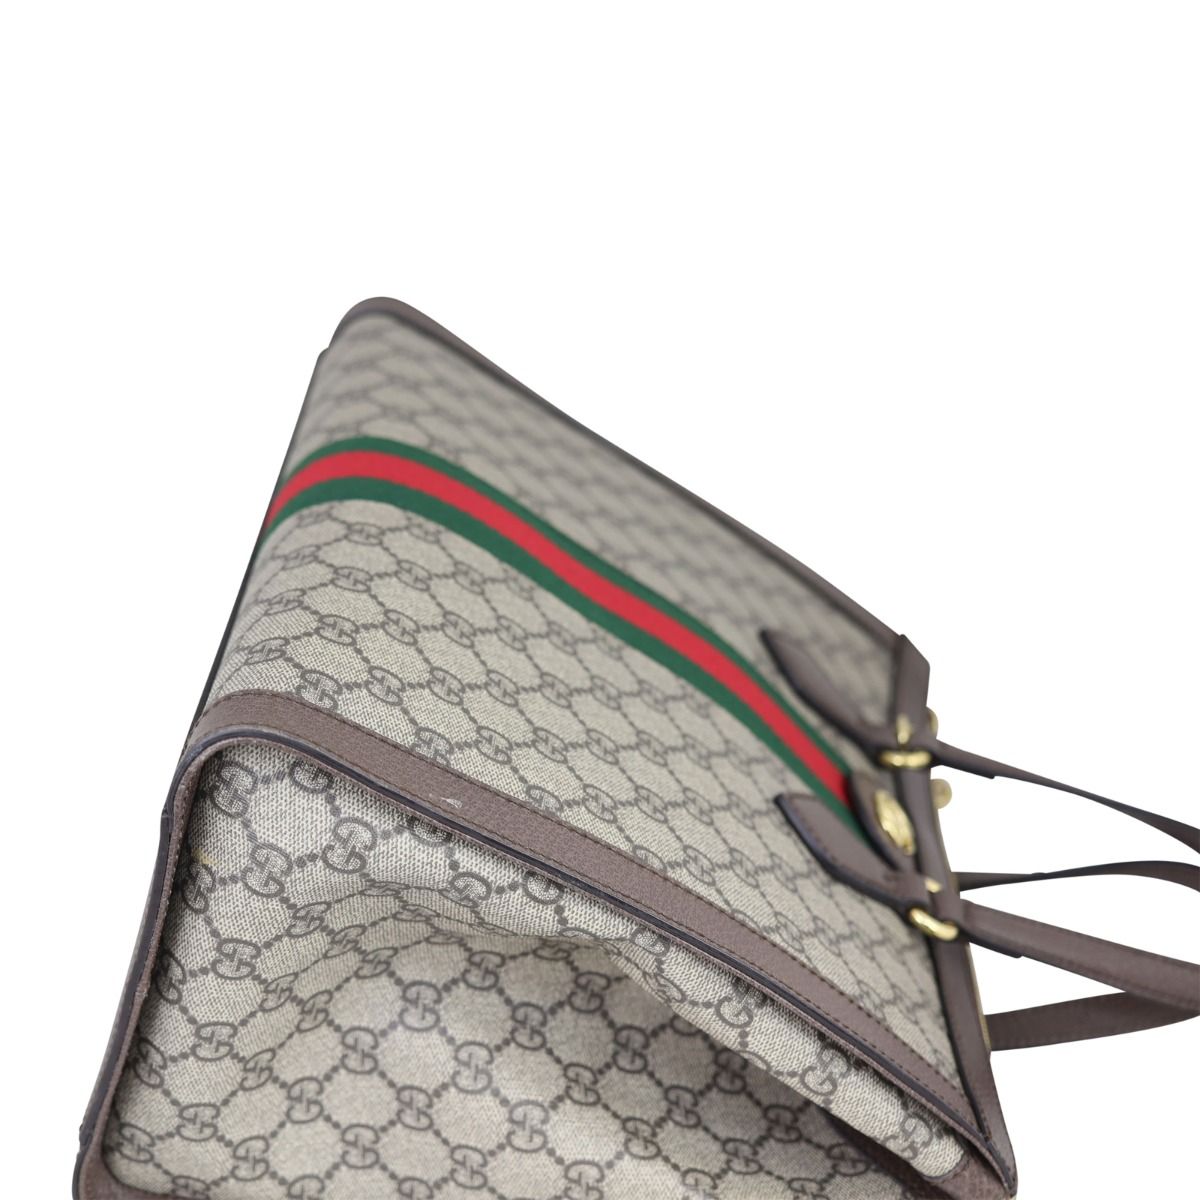 Gucci Ophidia GG Medium Tote Bag – Cettire